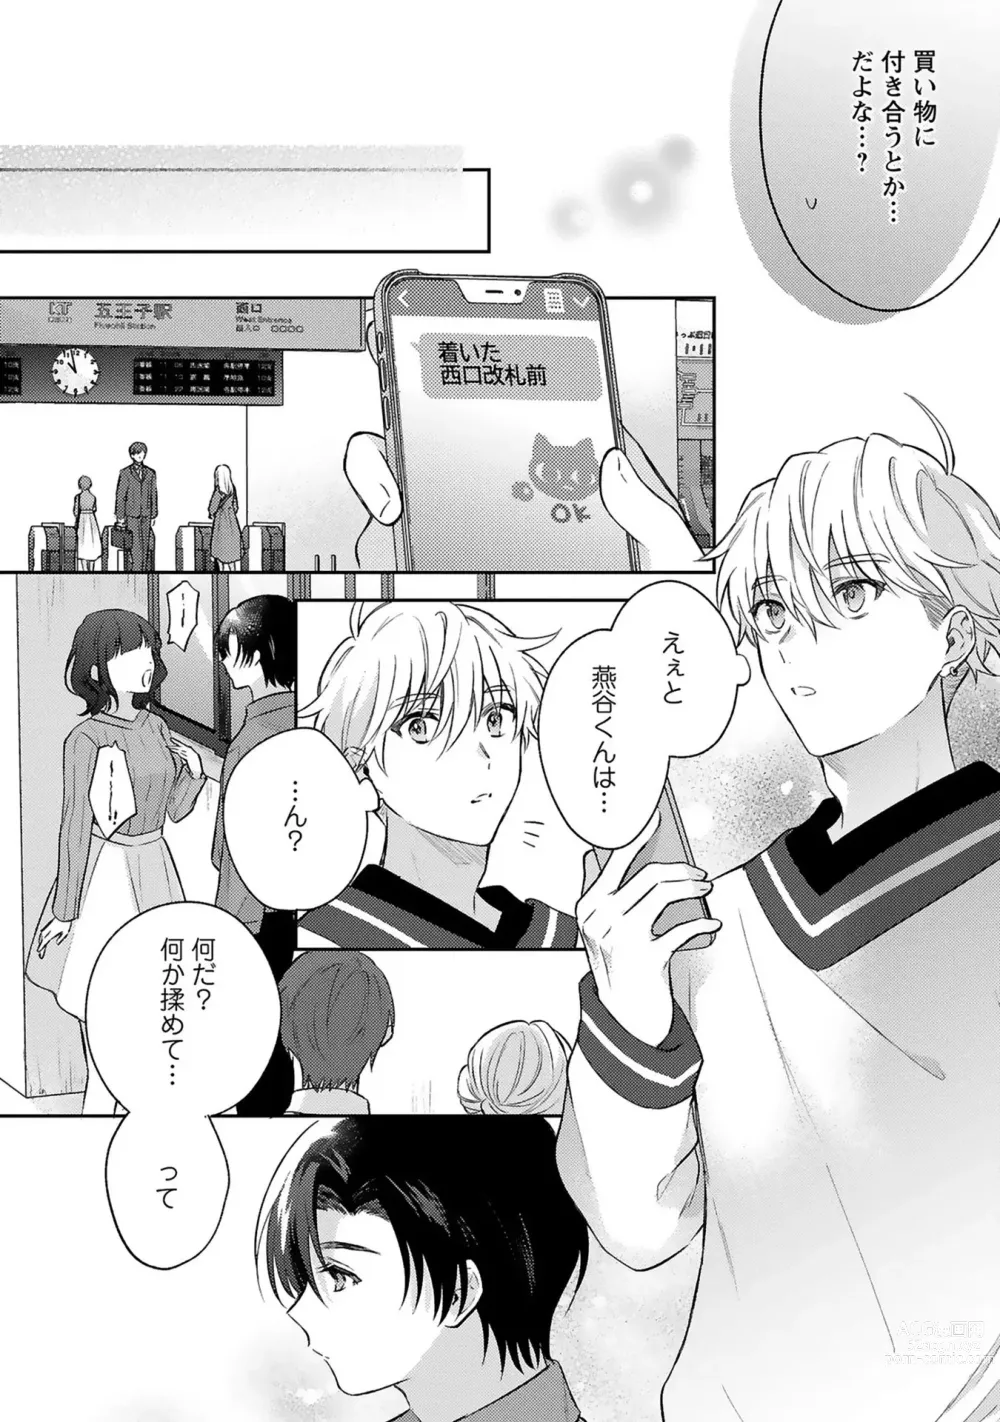 Page 24 of manga Sagashi Mono wa Kimi desu ka